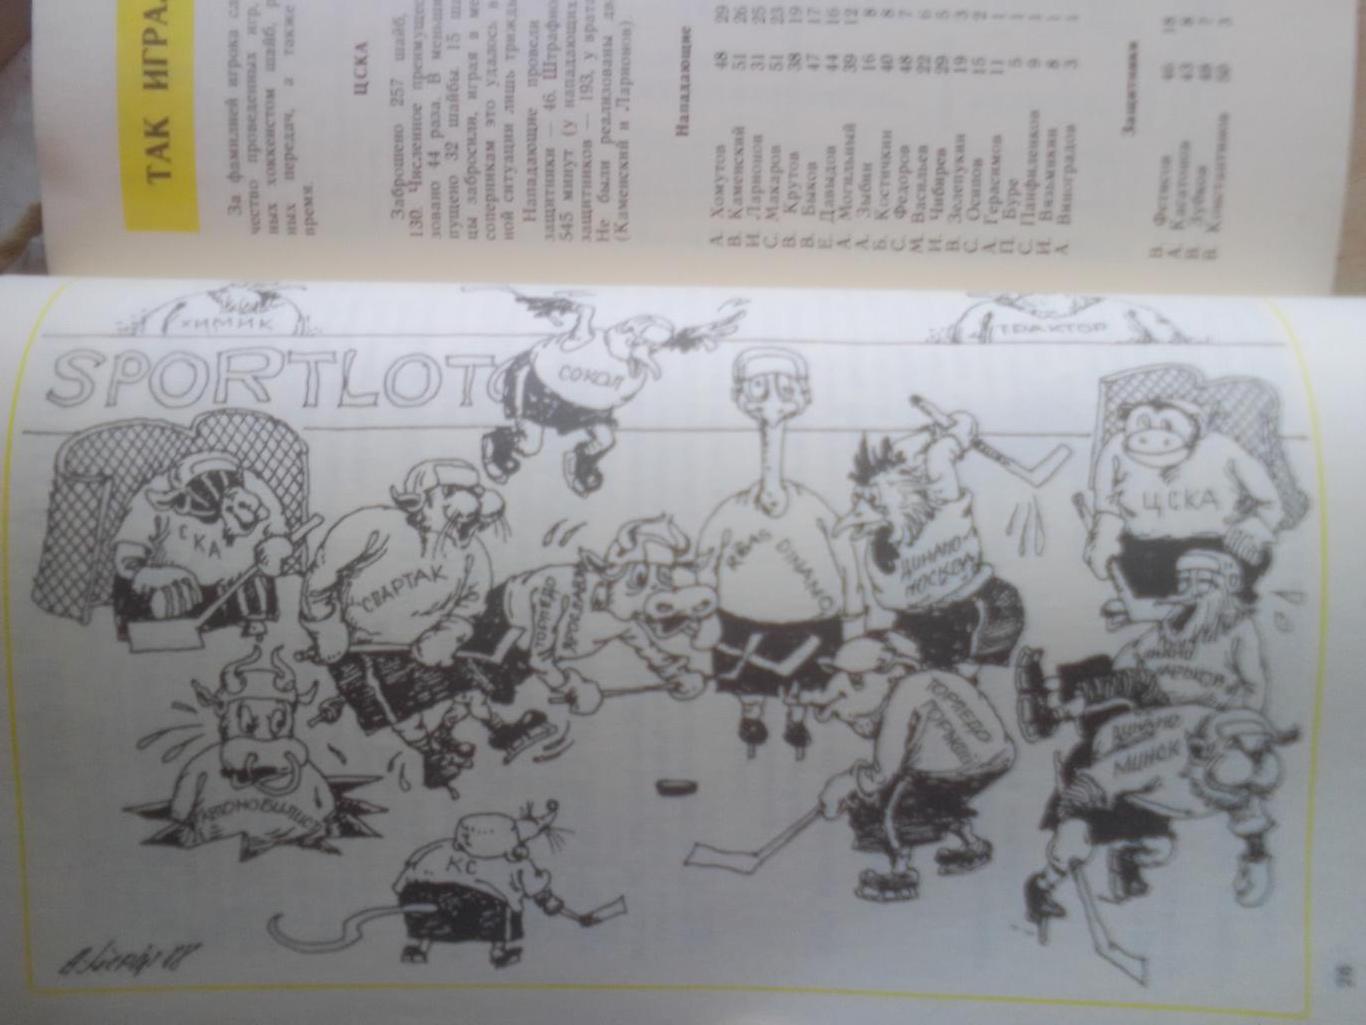 Хоккей справочник: г.Рига 1989 год. 1